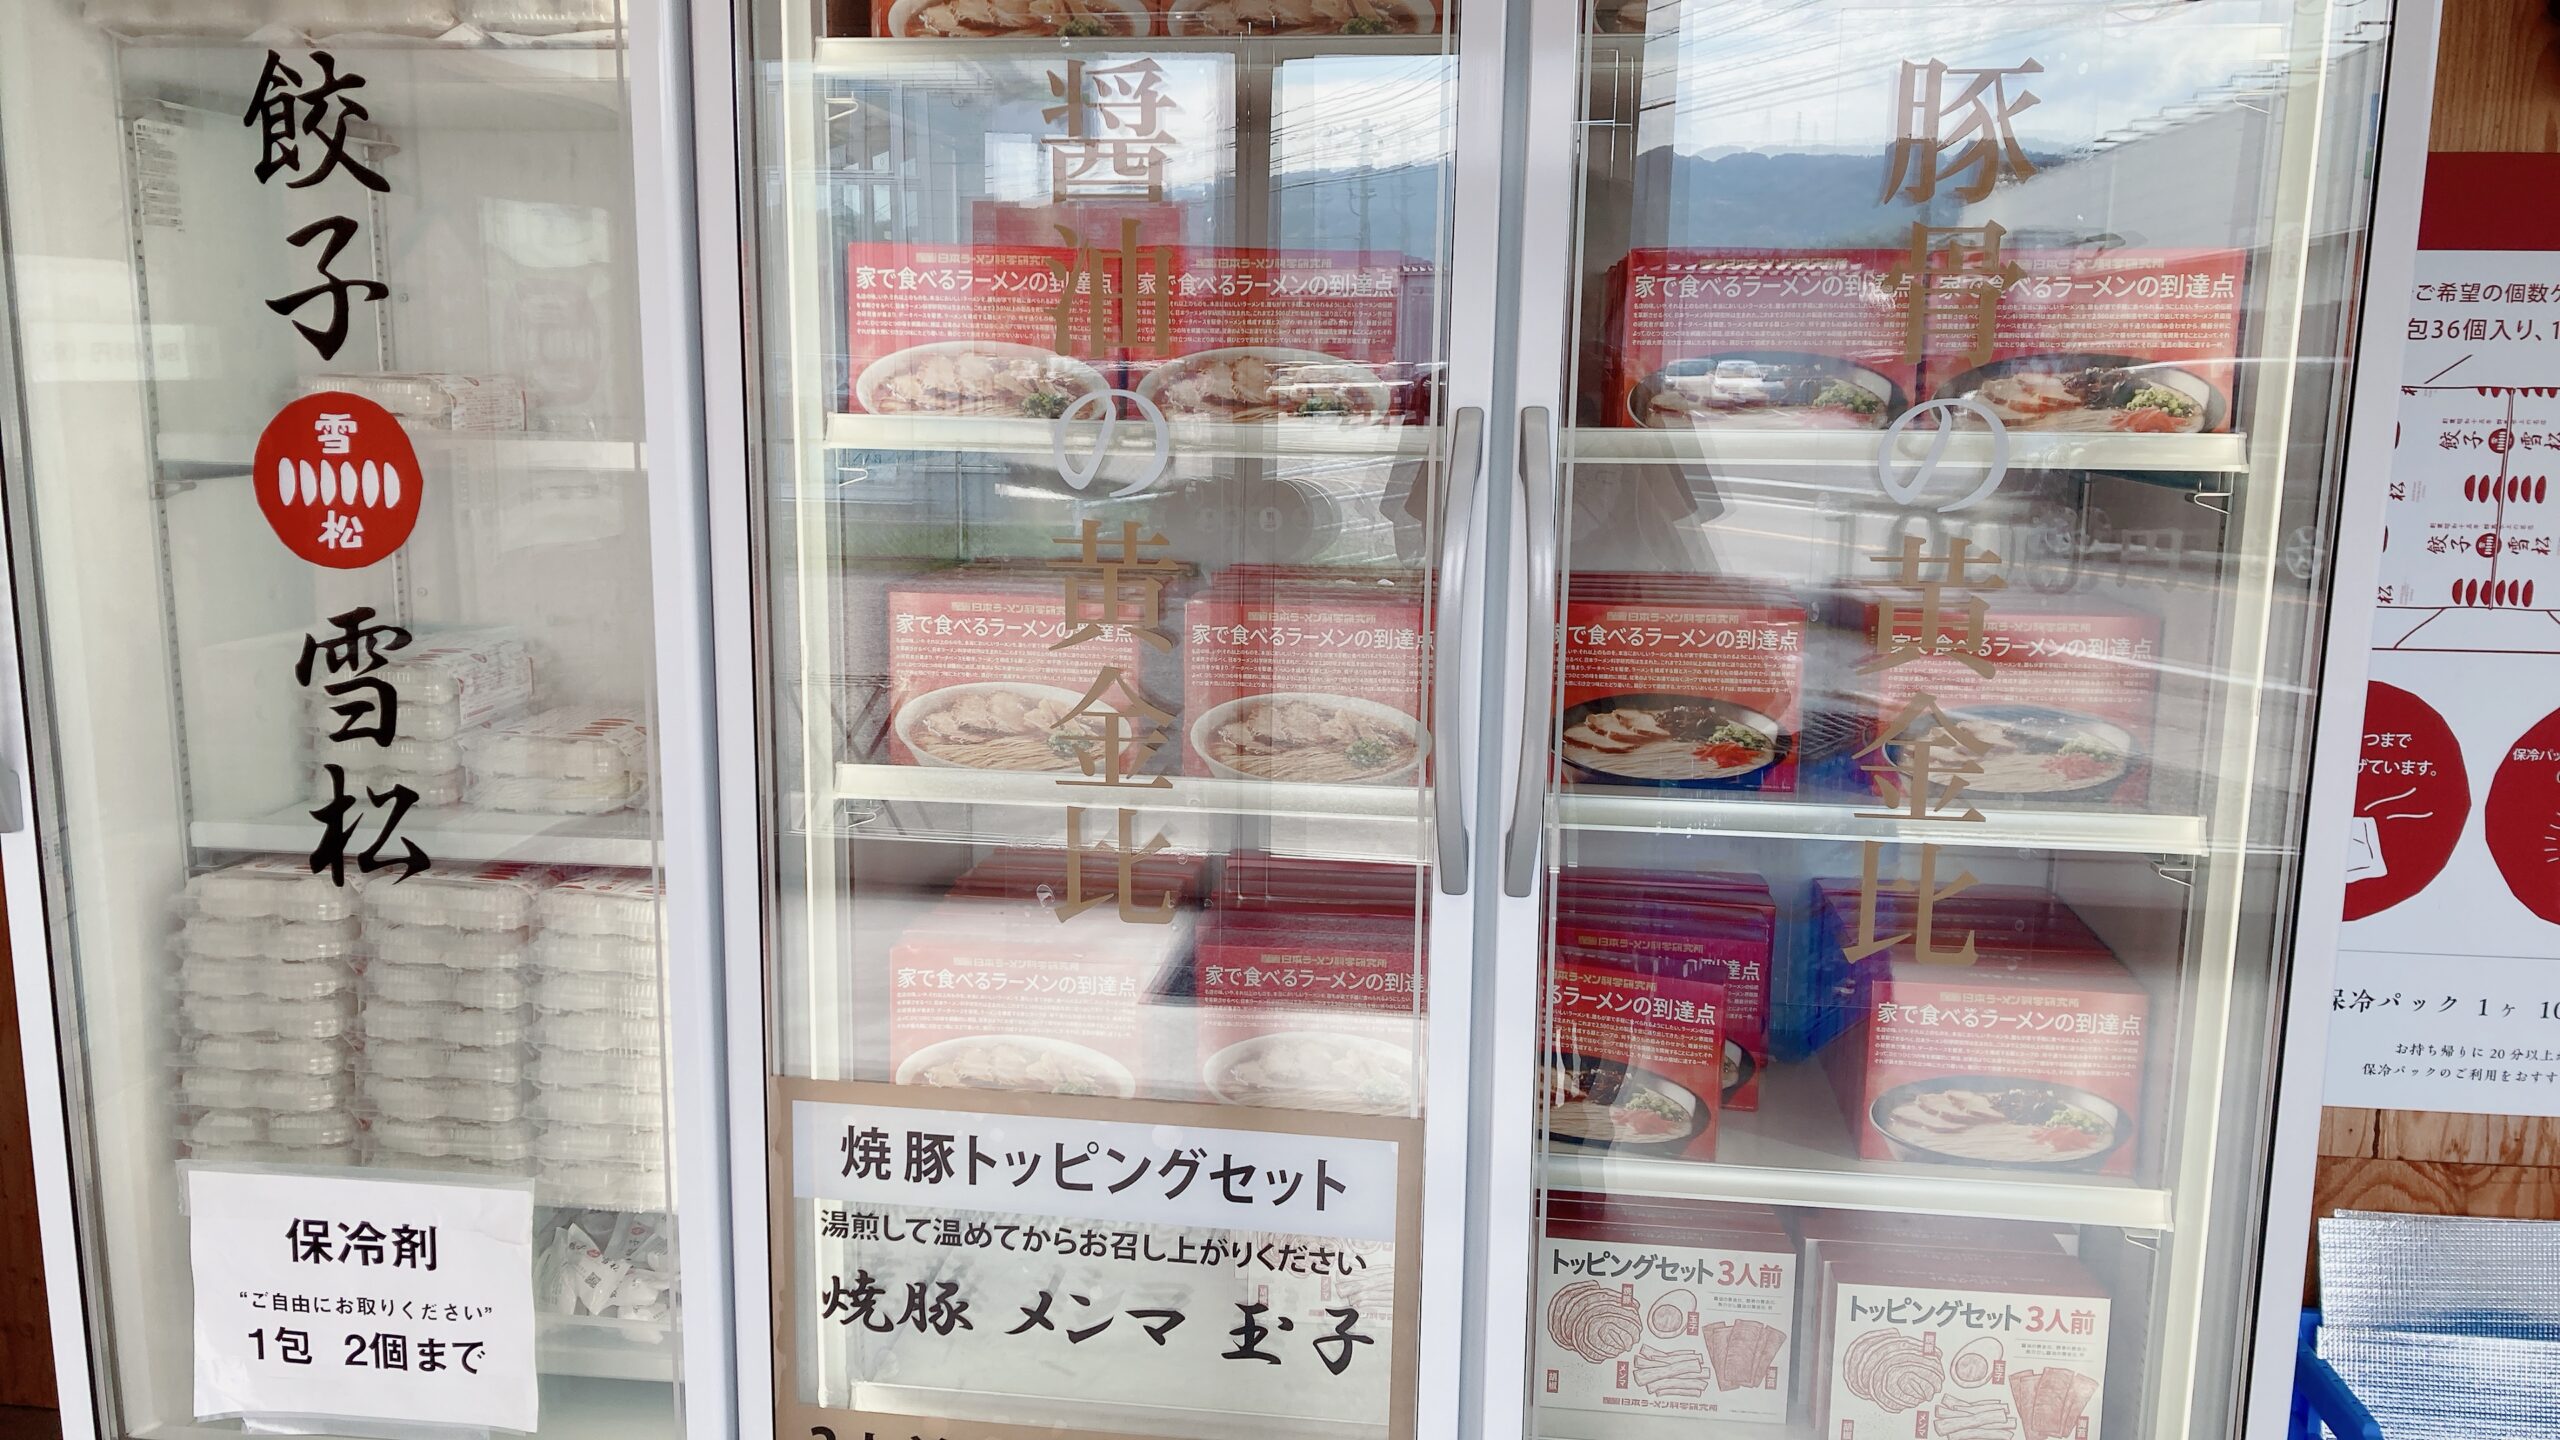 日本ラーメン科学研究所の家で食べるラーメンの到達点は、餃子の雪松の店舗を間借りするかたちで入っている